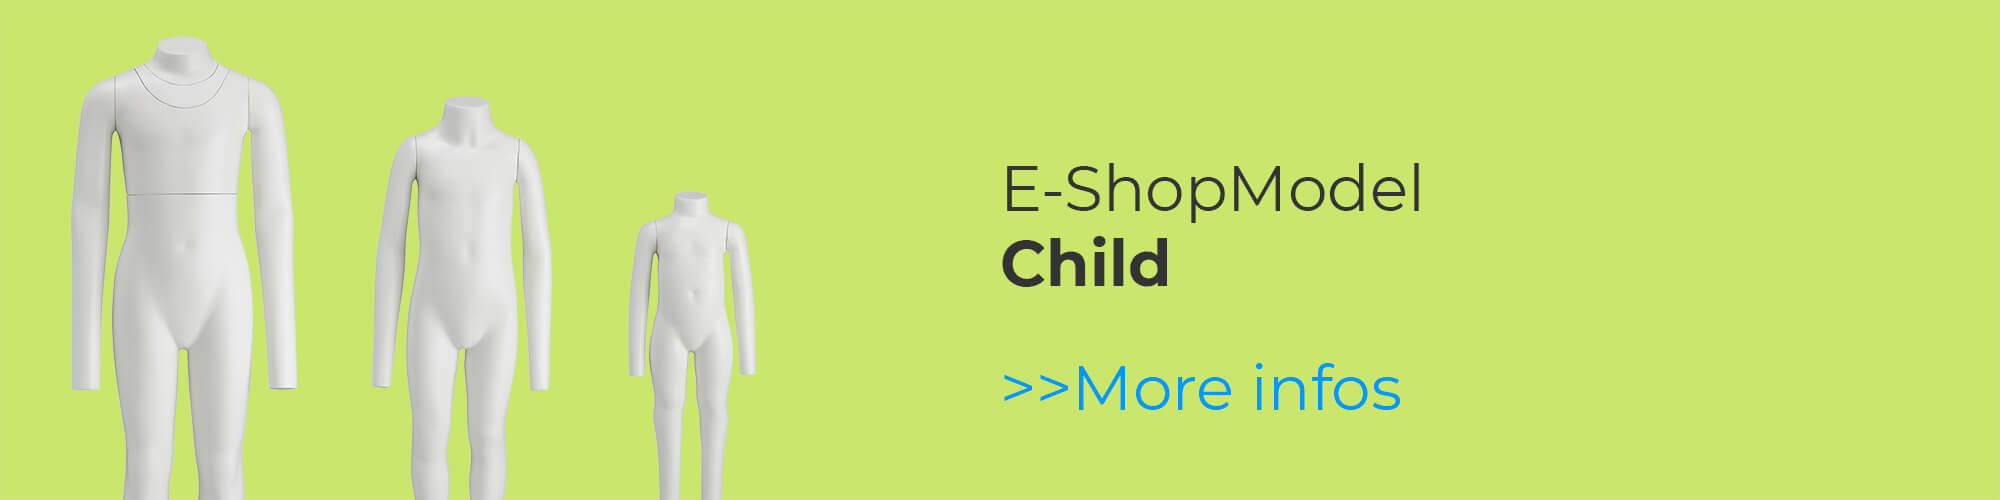 E-ShopModels Child